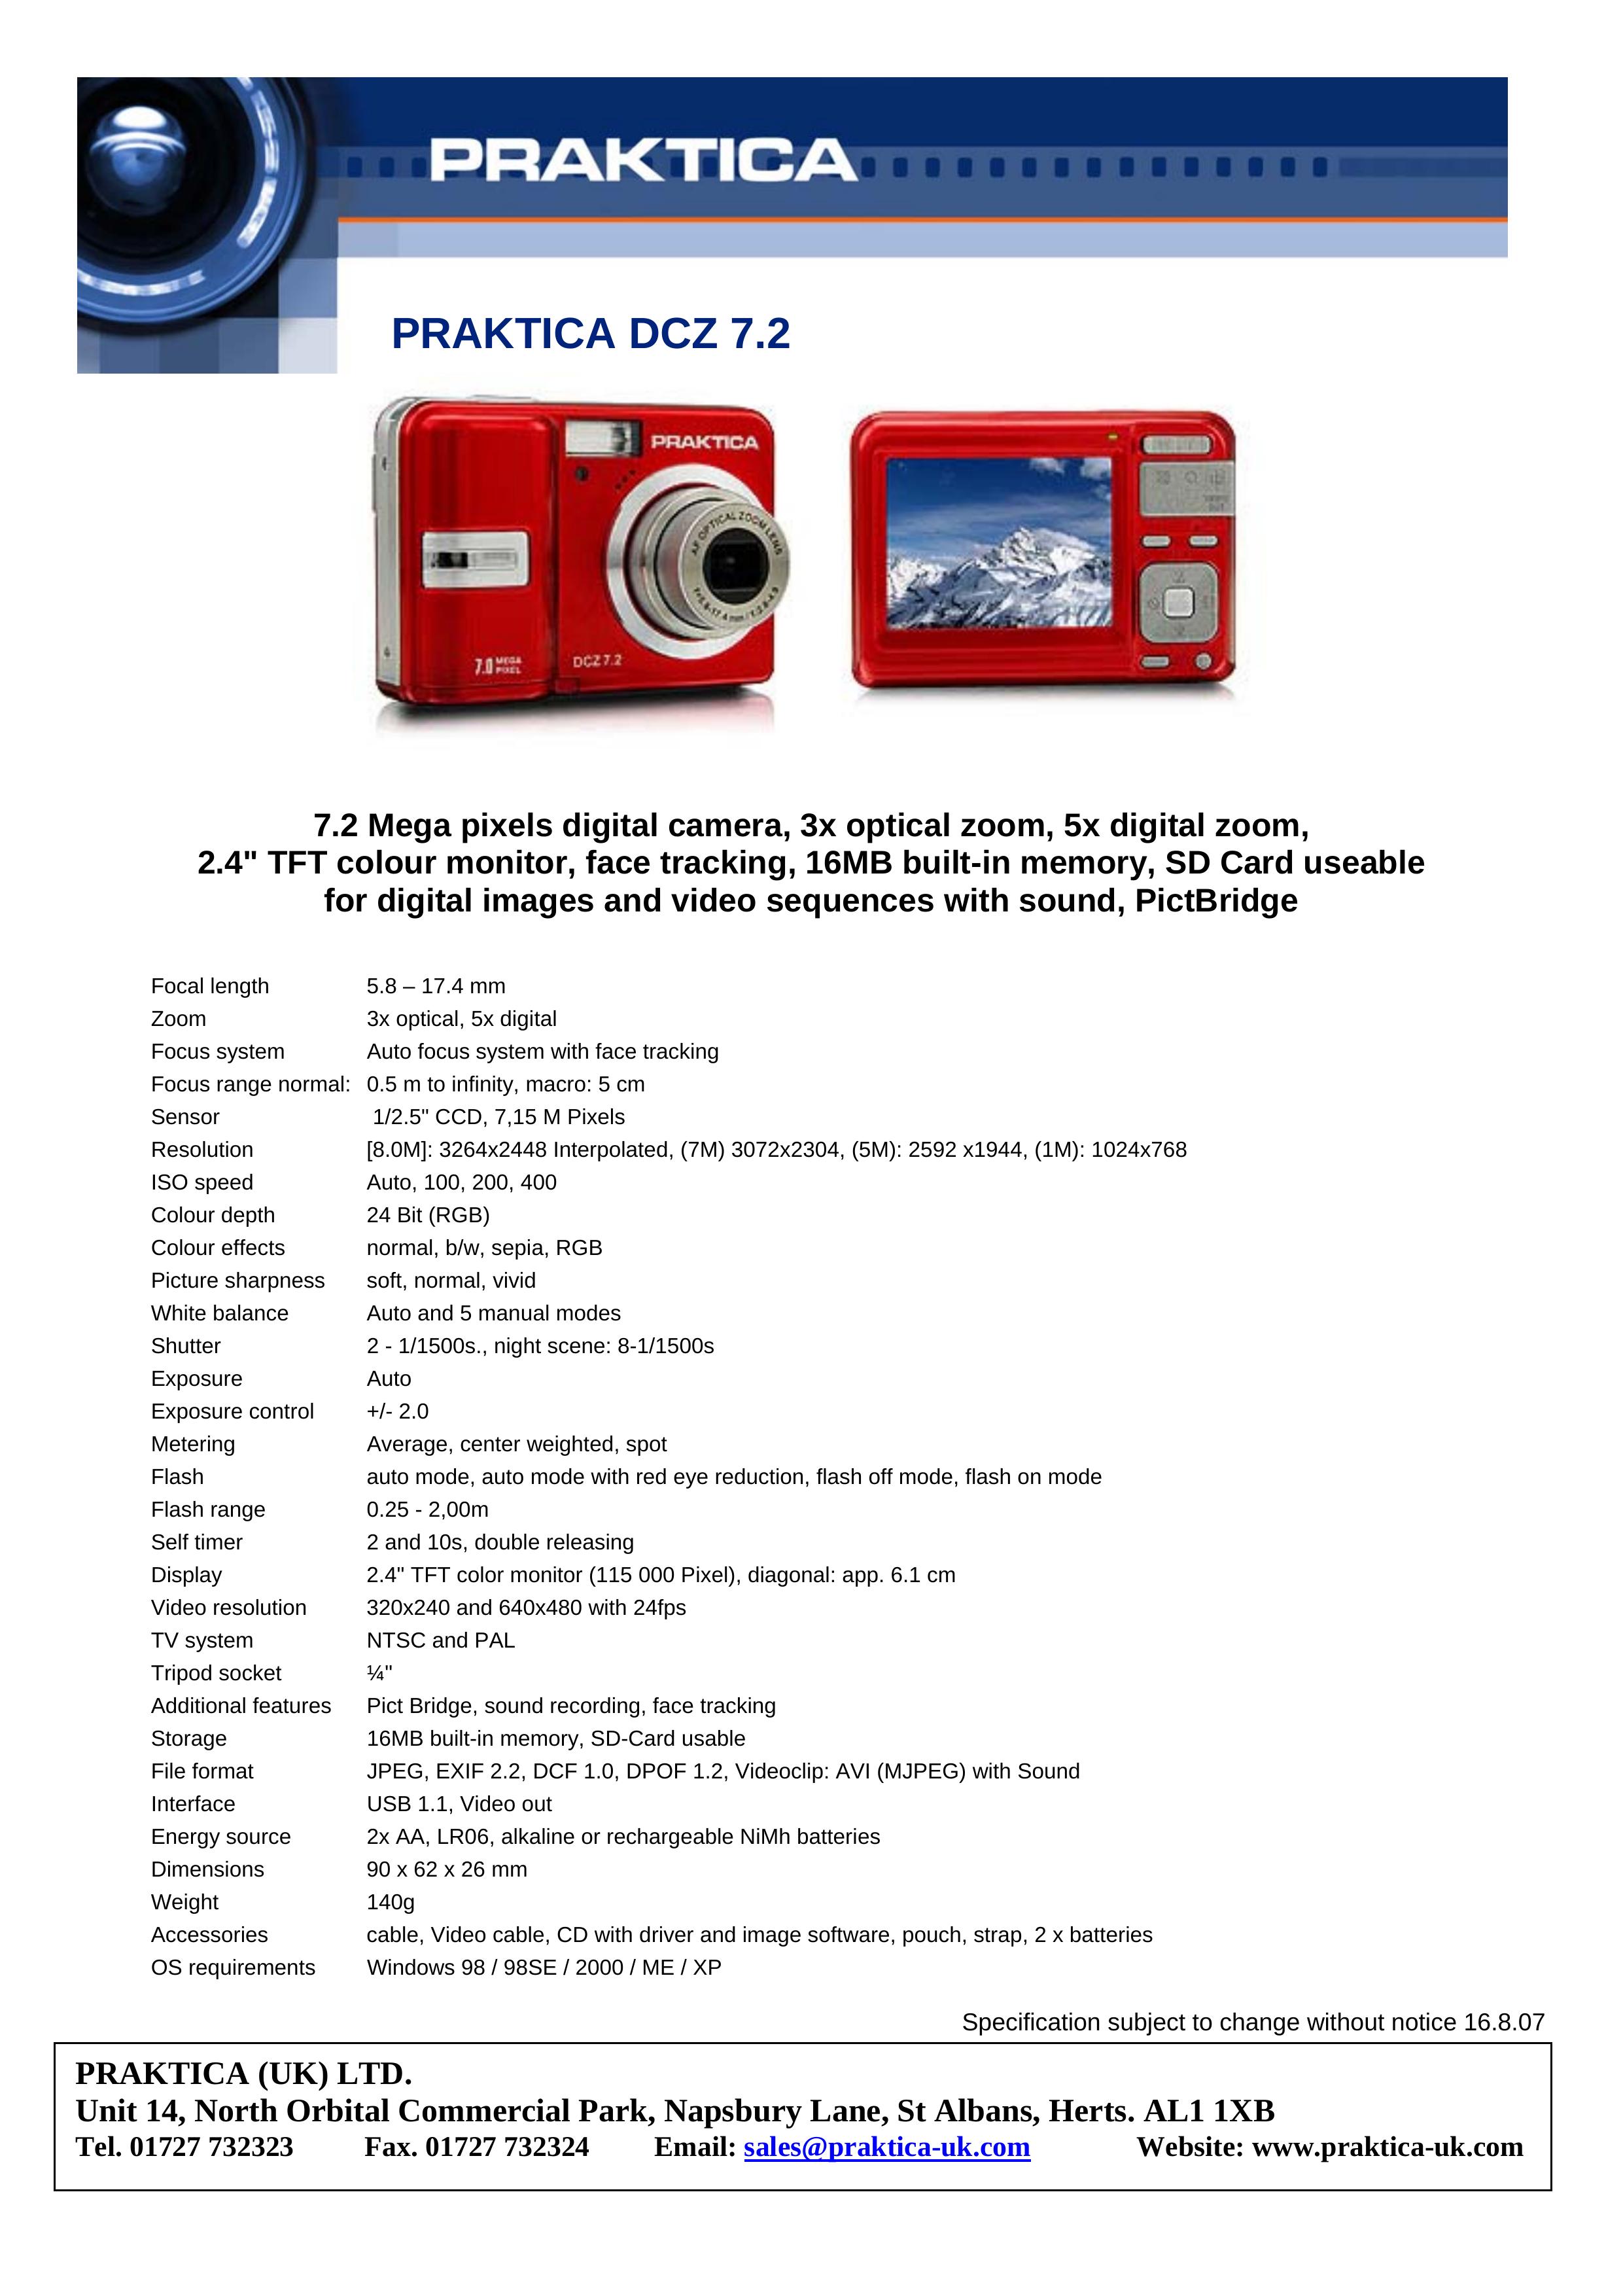 Praktica DCZ 7.2 Digital Camera User Manual